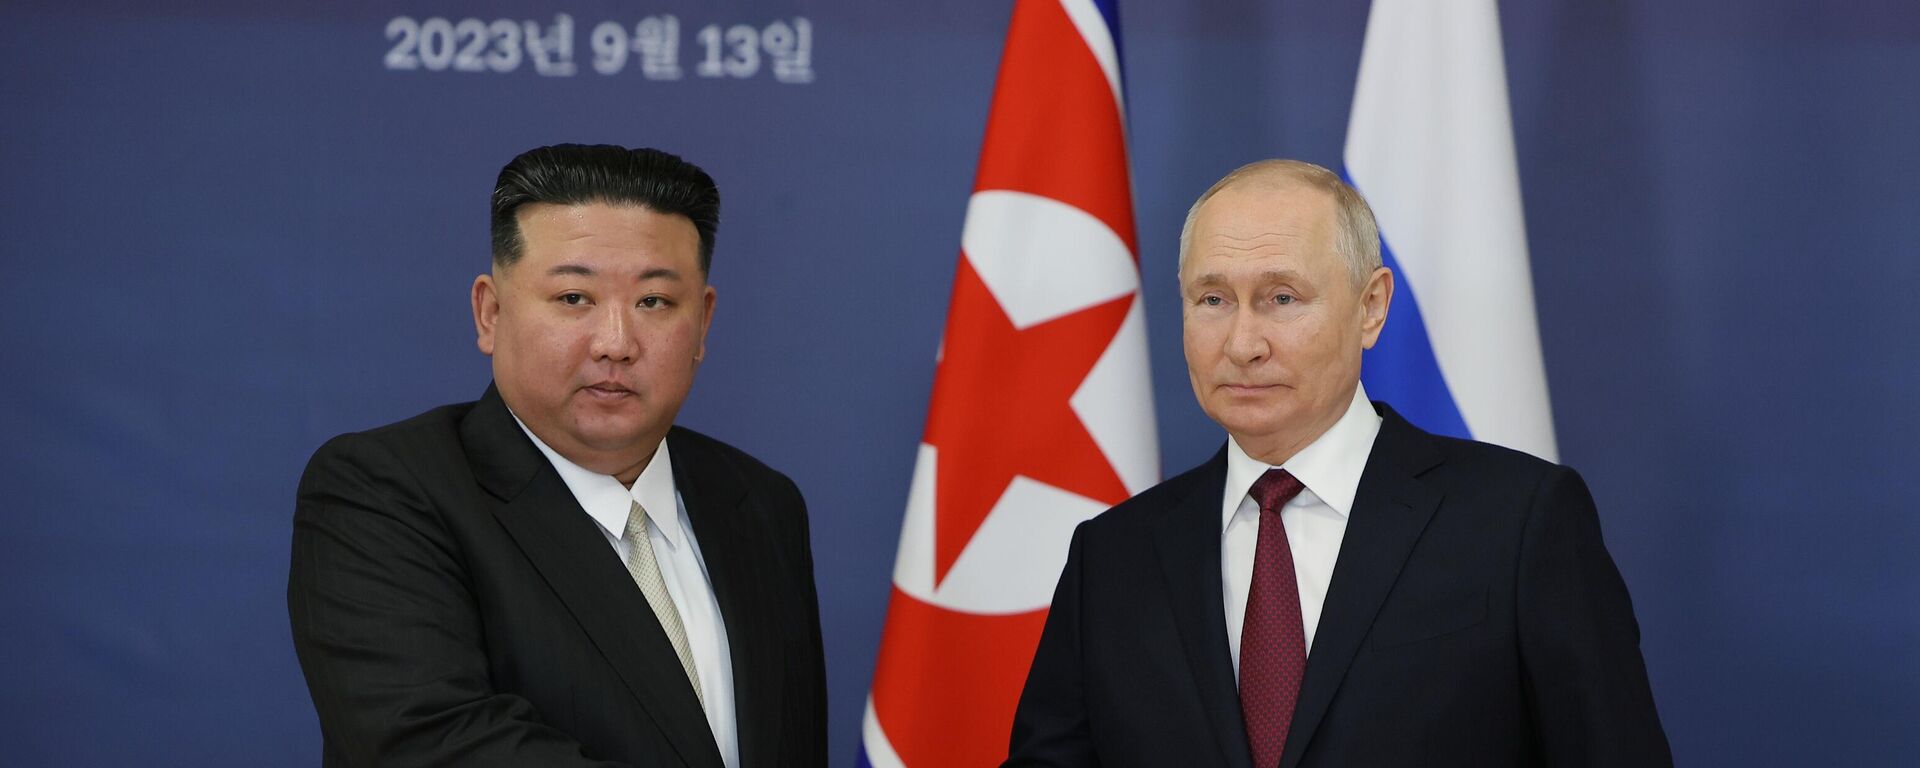 El líder norcoreano, Kim Jong-un, y el presidente de Rusia, Vladímir Putin, el 13 de septiembre, 2023 - Sputnik Mundo, 1920, 13.09.2023